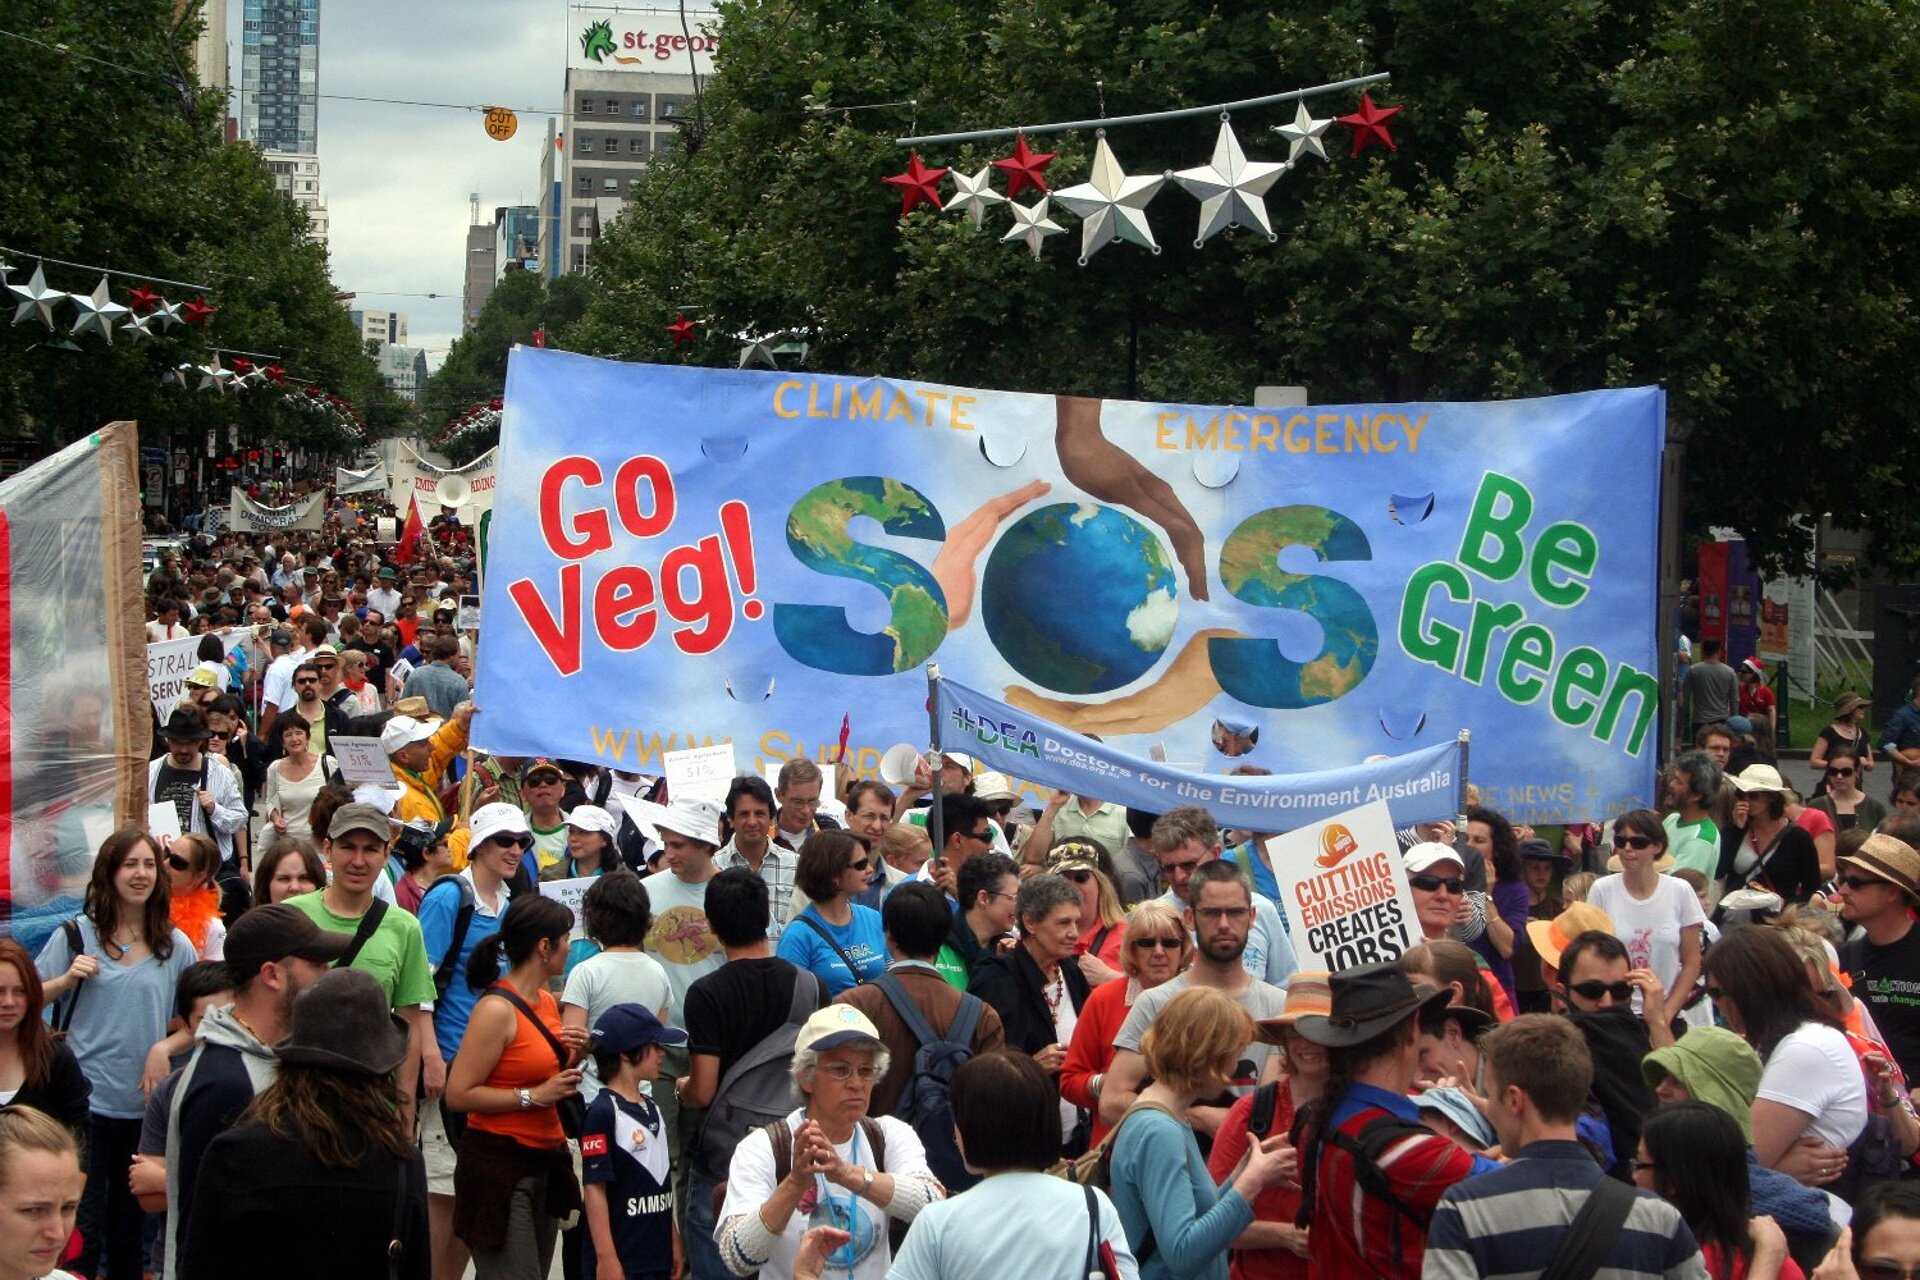 Na zdjęciu manifestacja w Melbourne w Australii w obronie klimatu. Manifestanci domagają się większej dbałości od polityków o klimat na Ziemi i doprowadzenie do zmniejszenia emisji dwutlenku węgla. Na zdjęciu wielki, kolorowy tłum ludzi maszerujący ulicą. Ludzie trzymają transparenty.